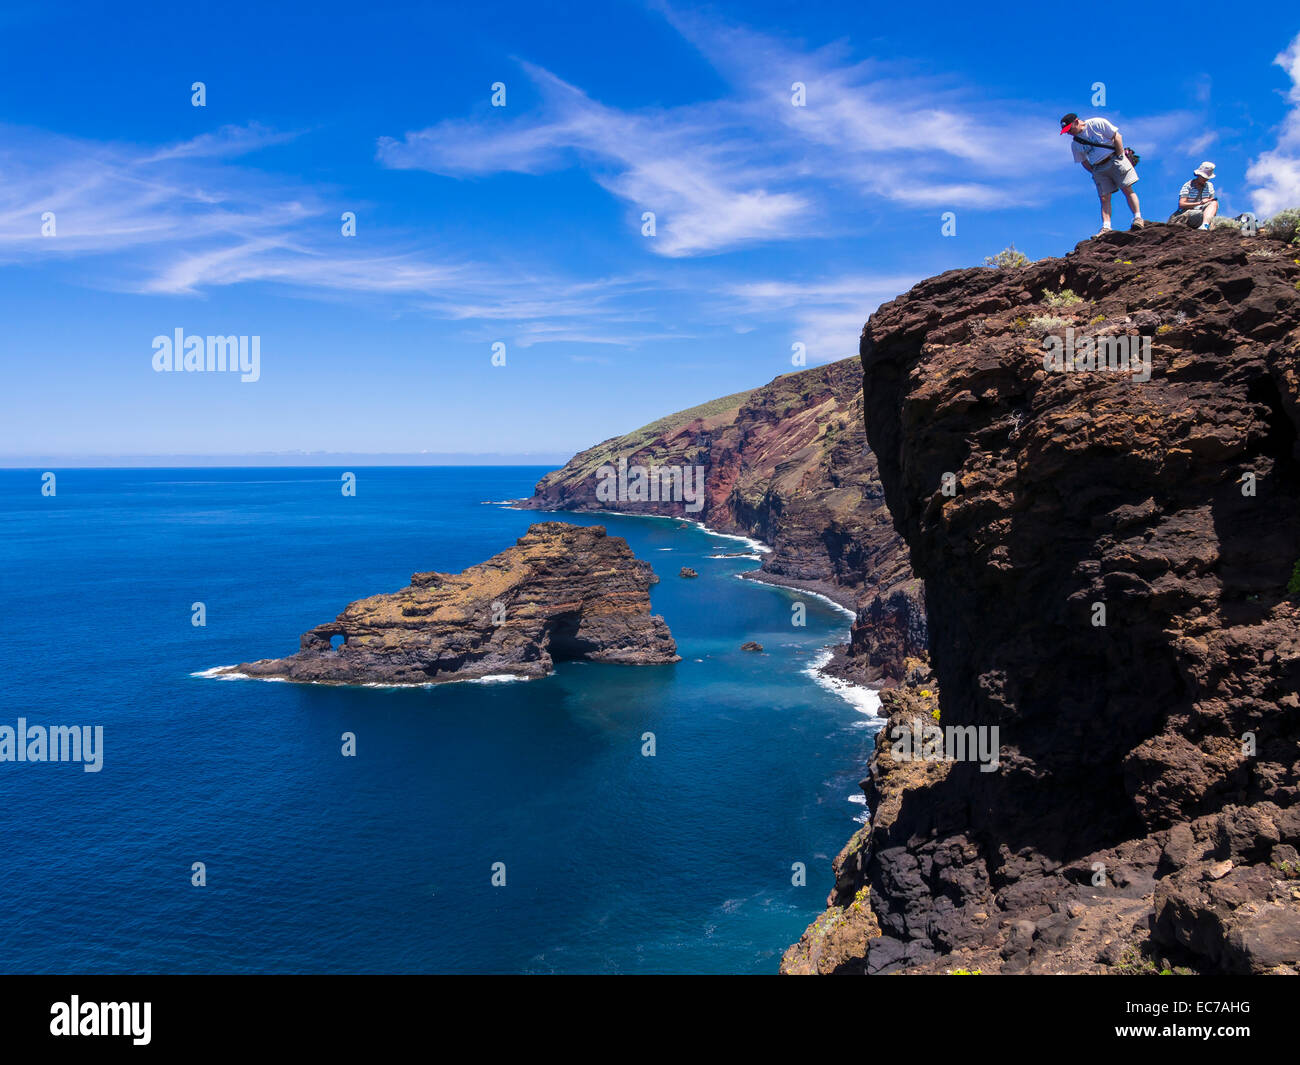 Spain, Canary Islands, La Palma, tourists at the cliff coast of Garafia Stock Photo